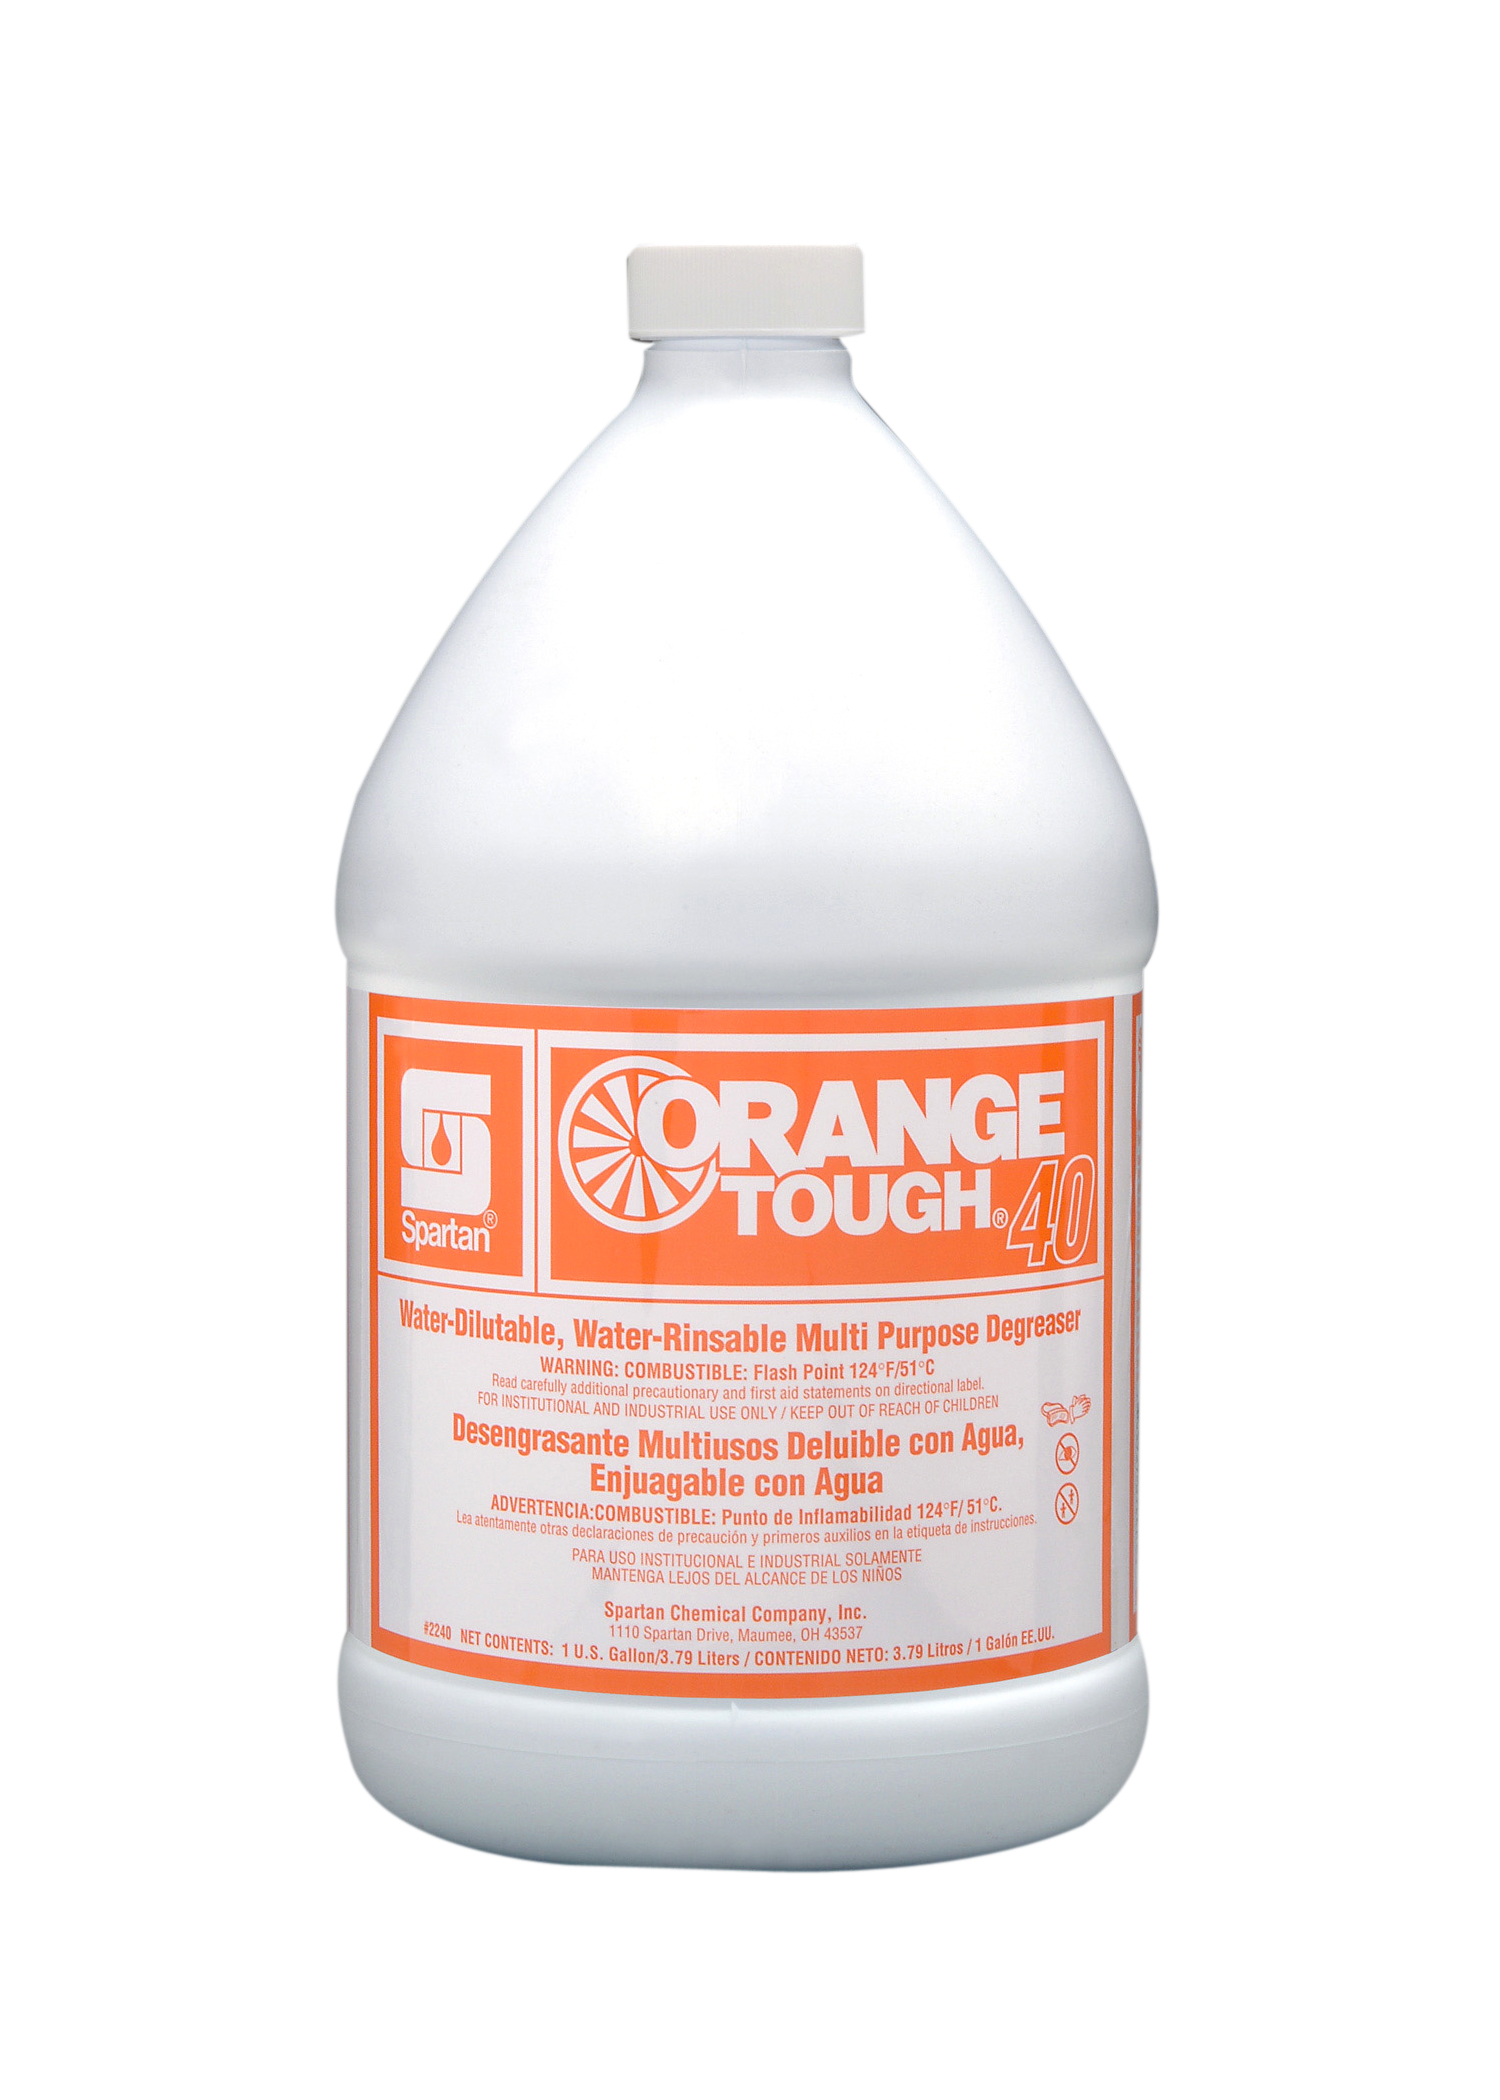 Orange Tough® 40 1 gallon (4 per case)